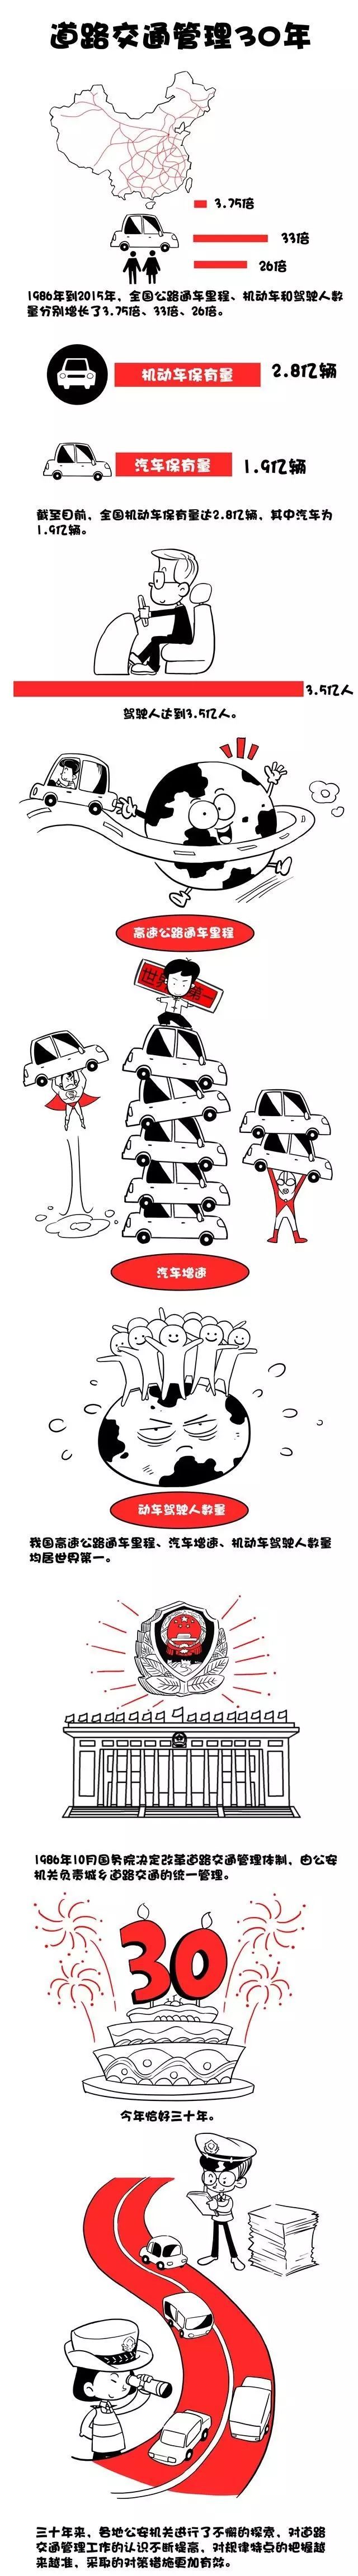 2019年安全月宣传漫画资料下载-漫画展示丨中国道路交通30年